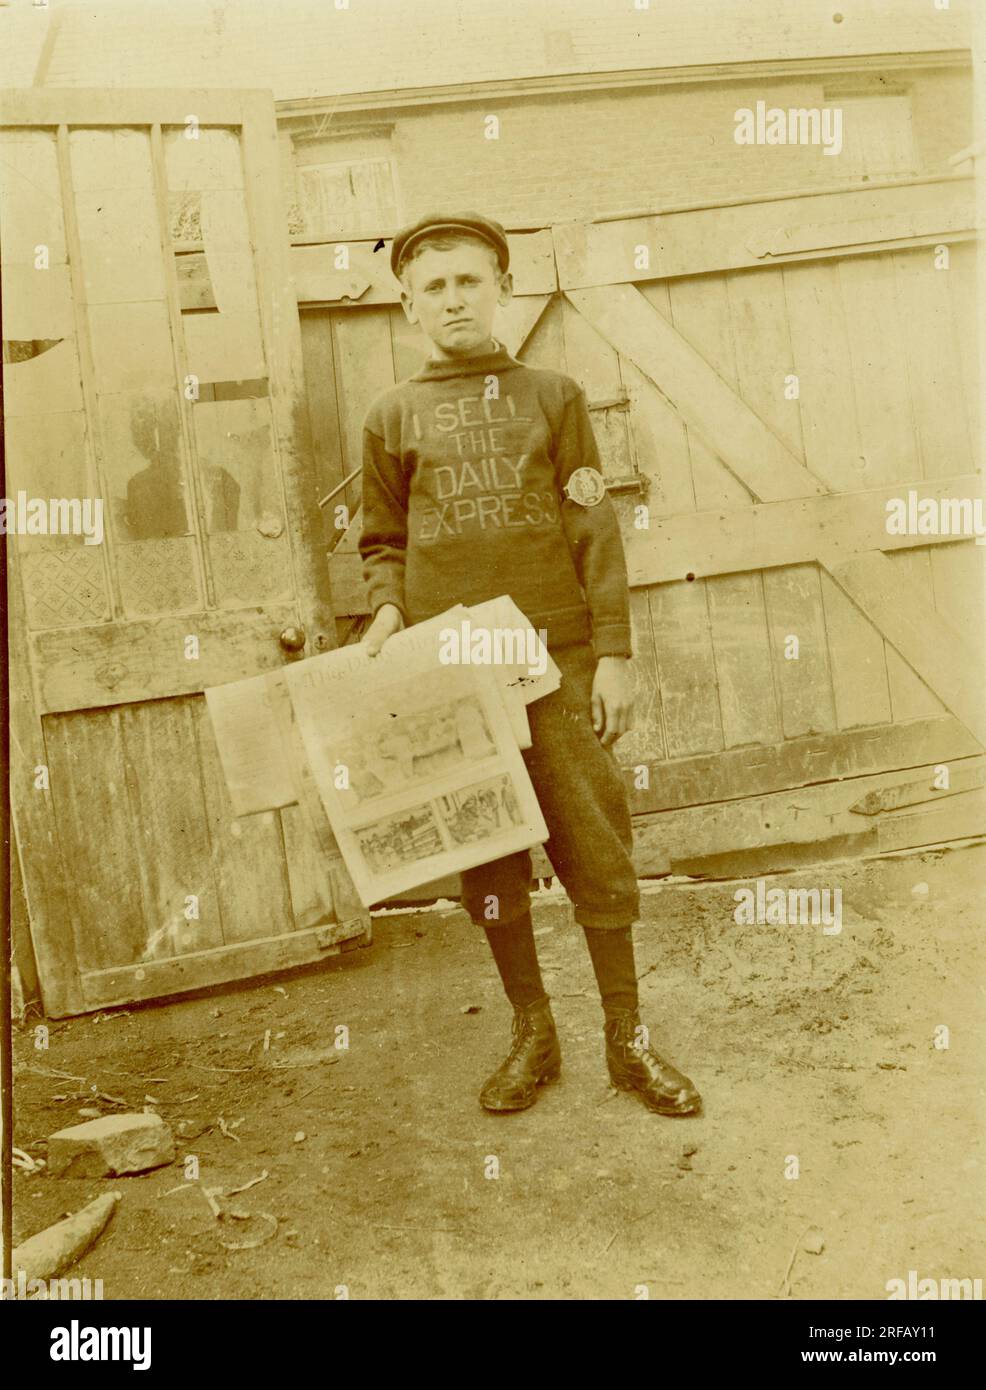 Carte postale originale de l'ère Titanic d'un garçon vendeur de journaux, adolescent, portant un "Je vends le cavalier Daily Express" mais détenant la licence Daily Mirror n° 98. Peut-être Liverpool vers 1912 Royaume-Uni Banque D'Images